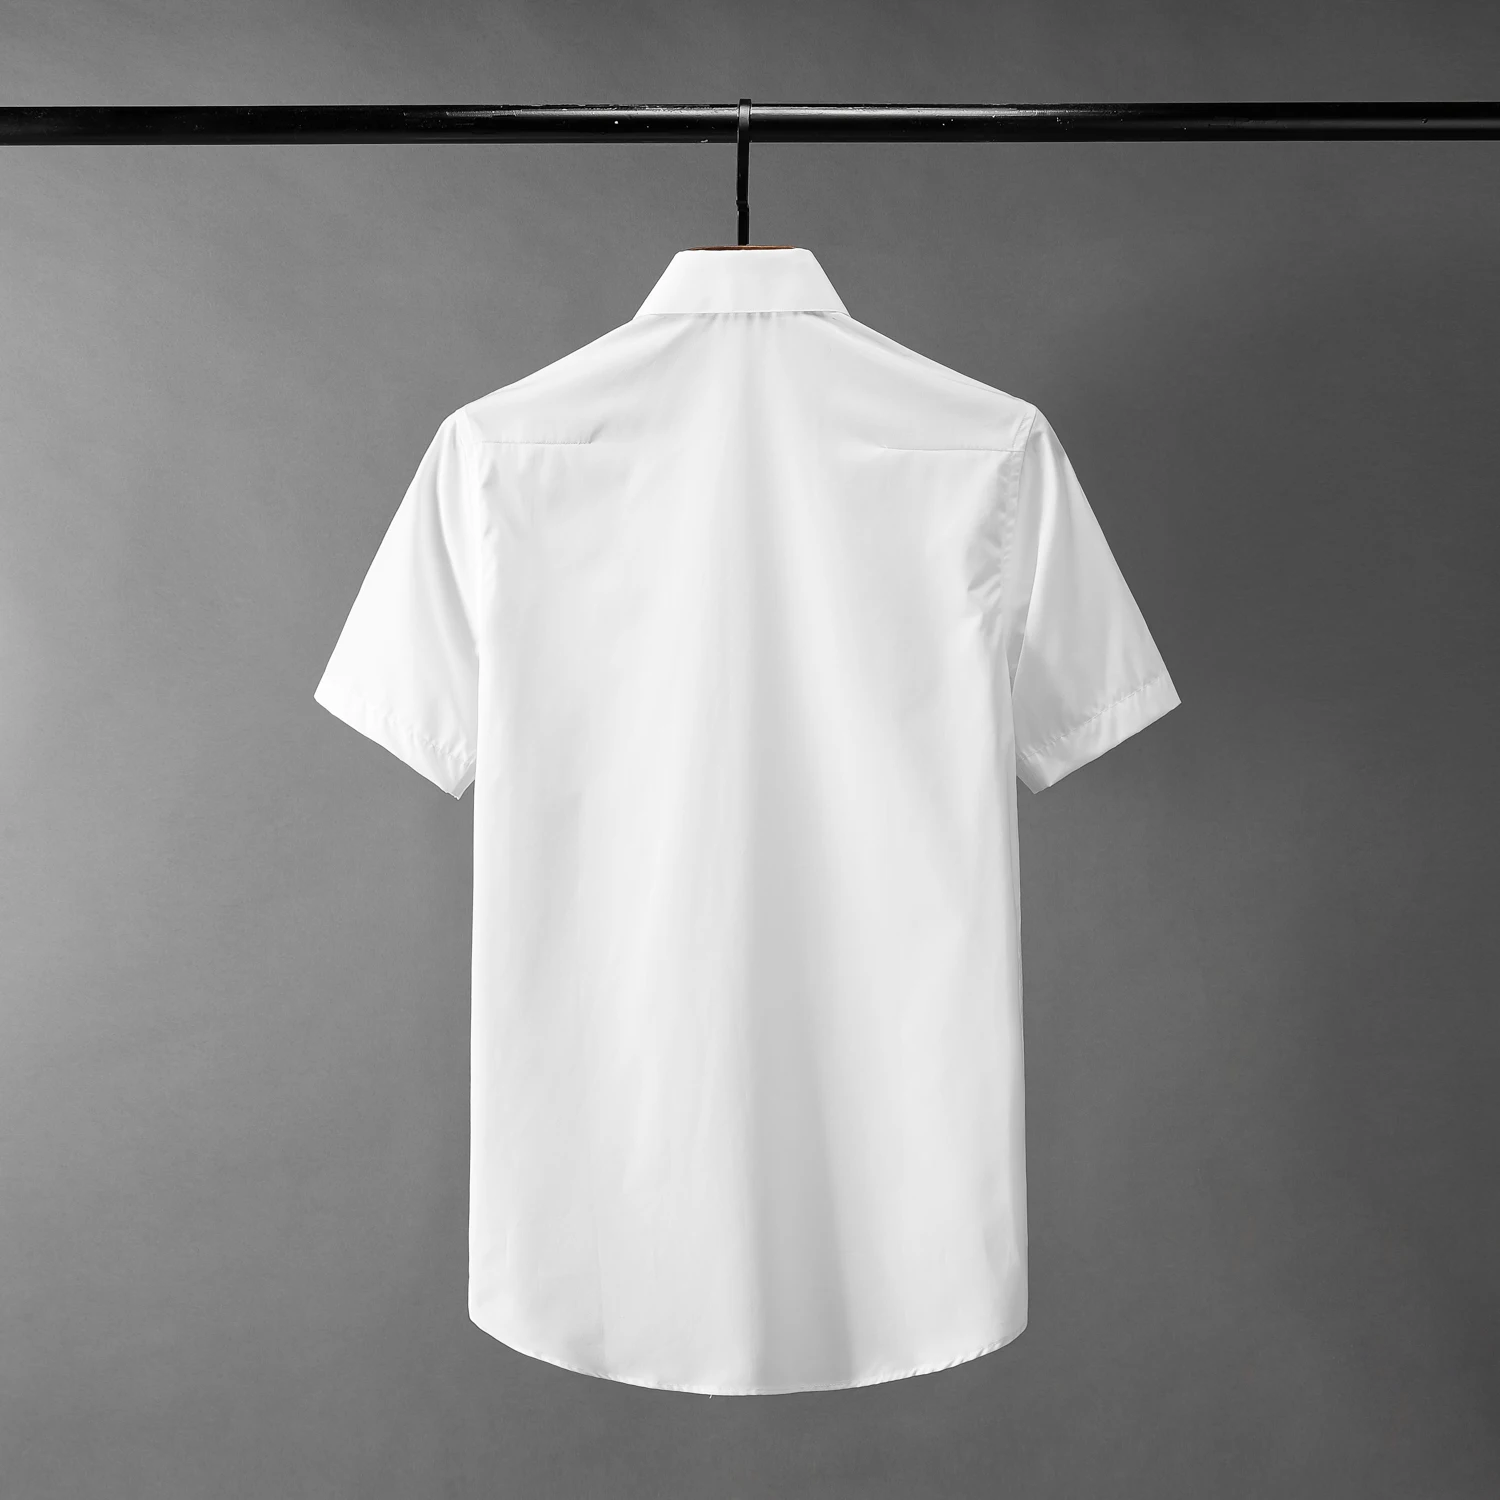 

Мужская приталенная рубашка, белая рубашка с высокой вышивкой на воротнике и коротким рукавом, лето 2019